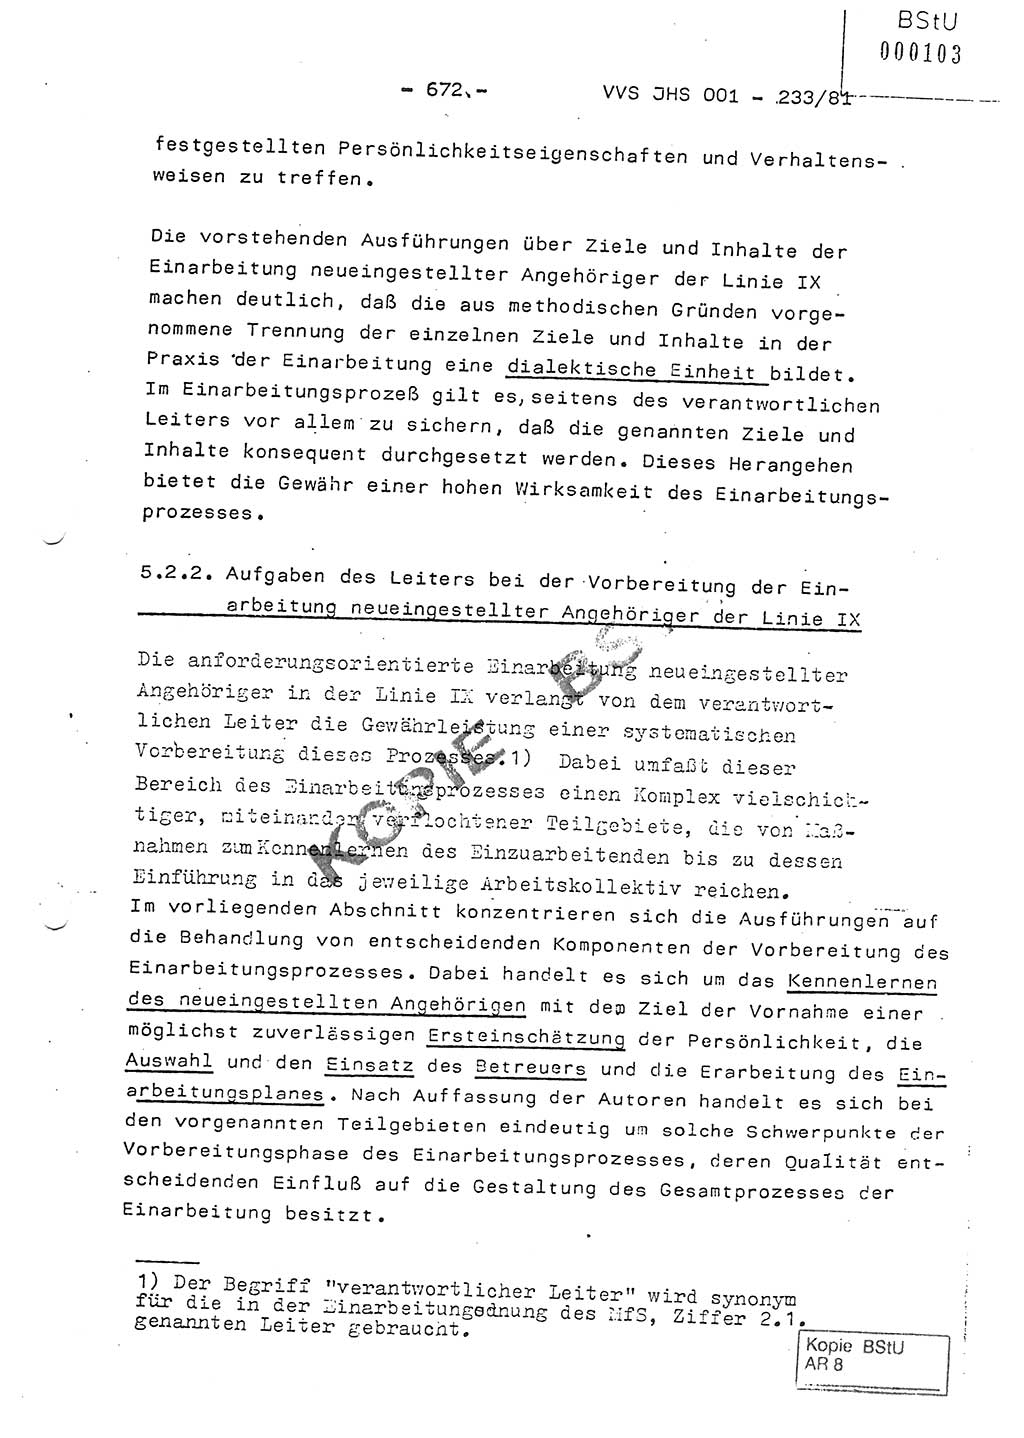 Dissertation Oberstleutnant Horst Zank (JHS), Oberstleutnant Dr. Karl-Heinz Knoblauch (JHS), Oberstleutnant Gustav-Adolf Kowalewski (HA Ⅸ), Oberstleutnant Wolfgang Plötner (HA Ⅸ), Ministerium für Staatssicherheit (MfS) [Deutsche Demokratische Republik (DDR)], Juristische Hochschule (JHS), Vertrauliche Verschlußsache (VVS) o001-233/81, Potsdam 1981, Blatt 672 (Diss. MfS DDR JHS VVS o001-233/81 1981, Bl. 672)